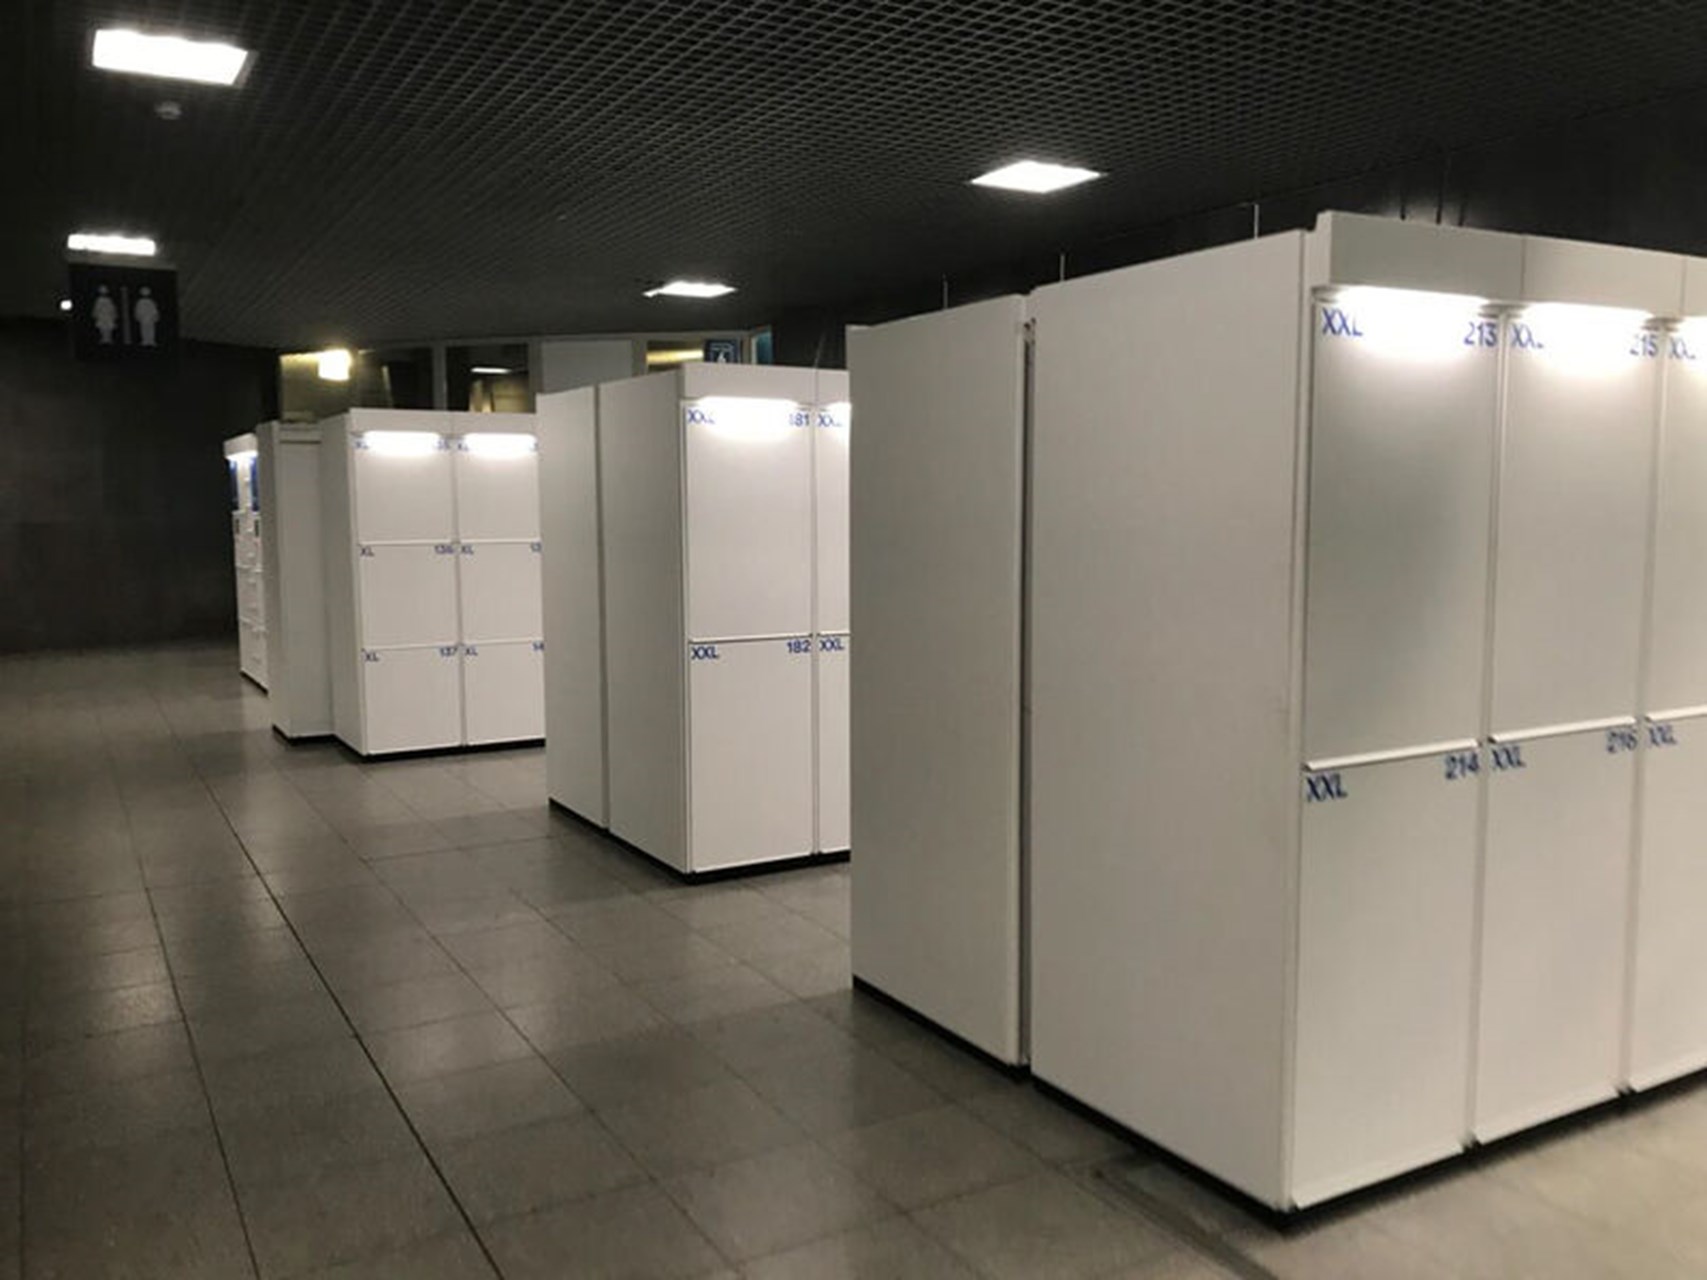 Primat's automatic luggage lockers in Belgium